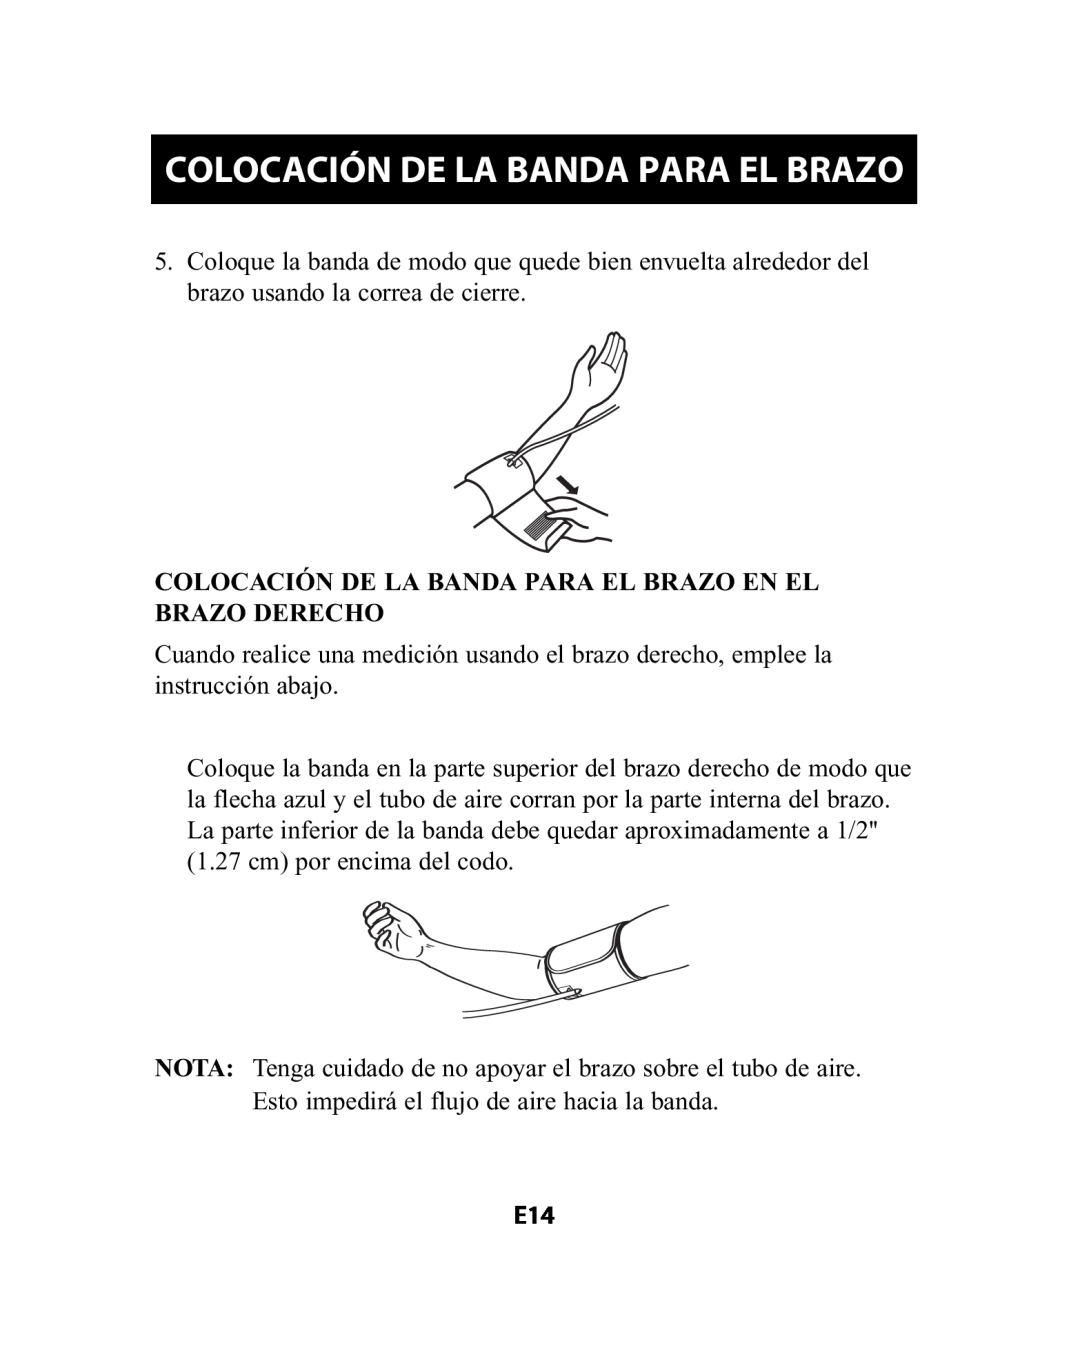 Omron Healthcare HEM-741CREL manual Colocación De La Banda Para El Brazo 